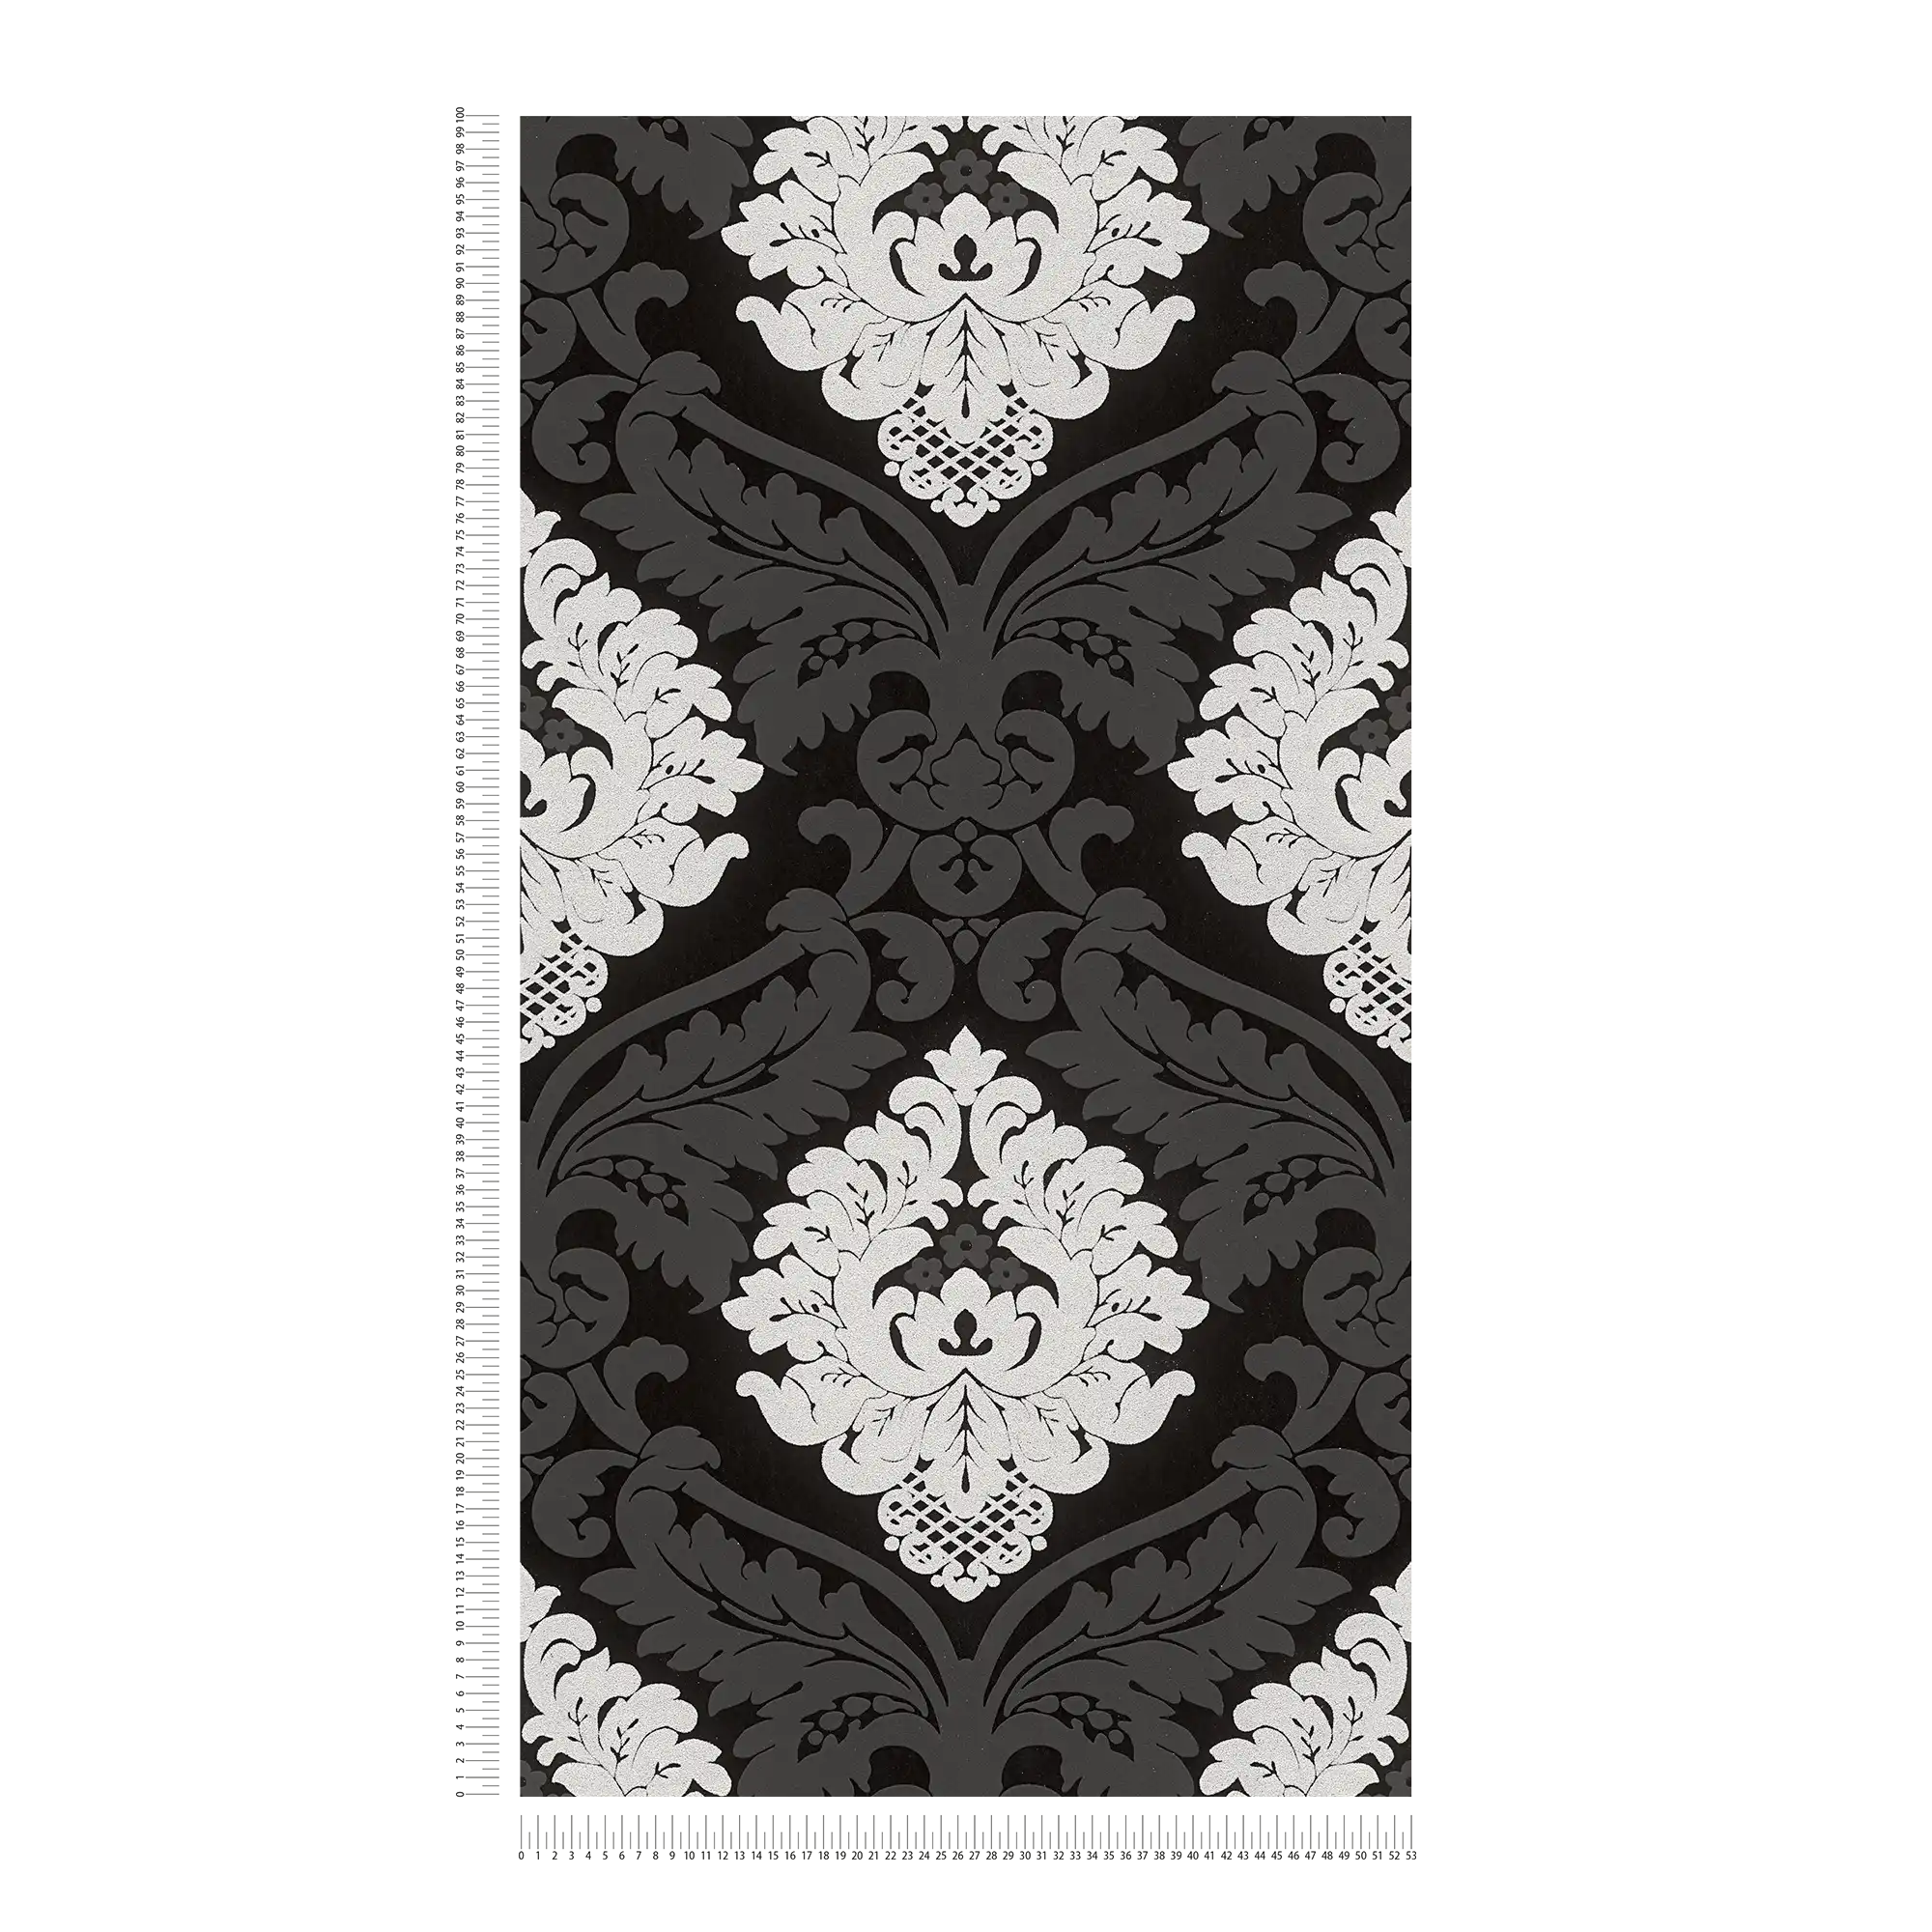             Carta da parati ornamentale effetto glitter ed effetto 3D - nero, argento, bianco
        